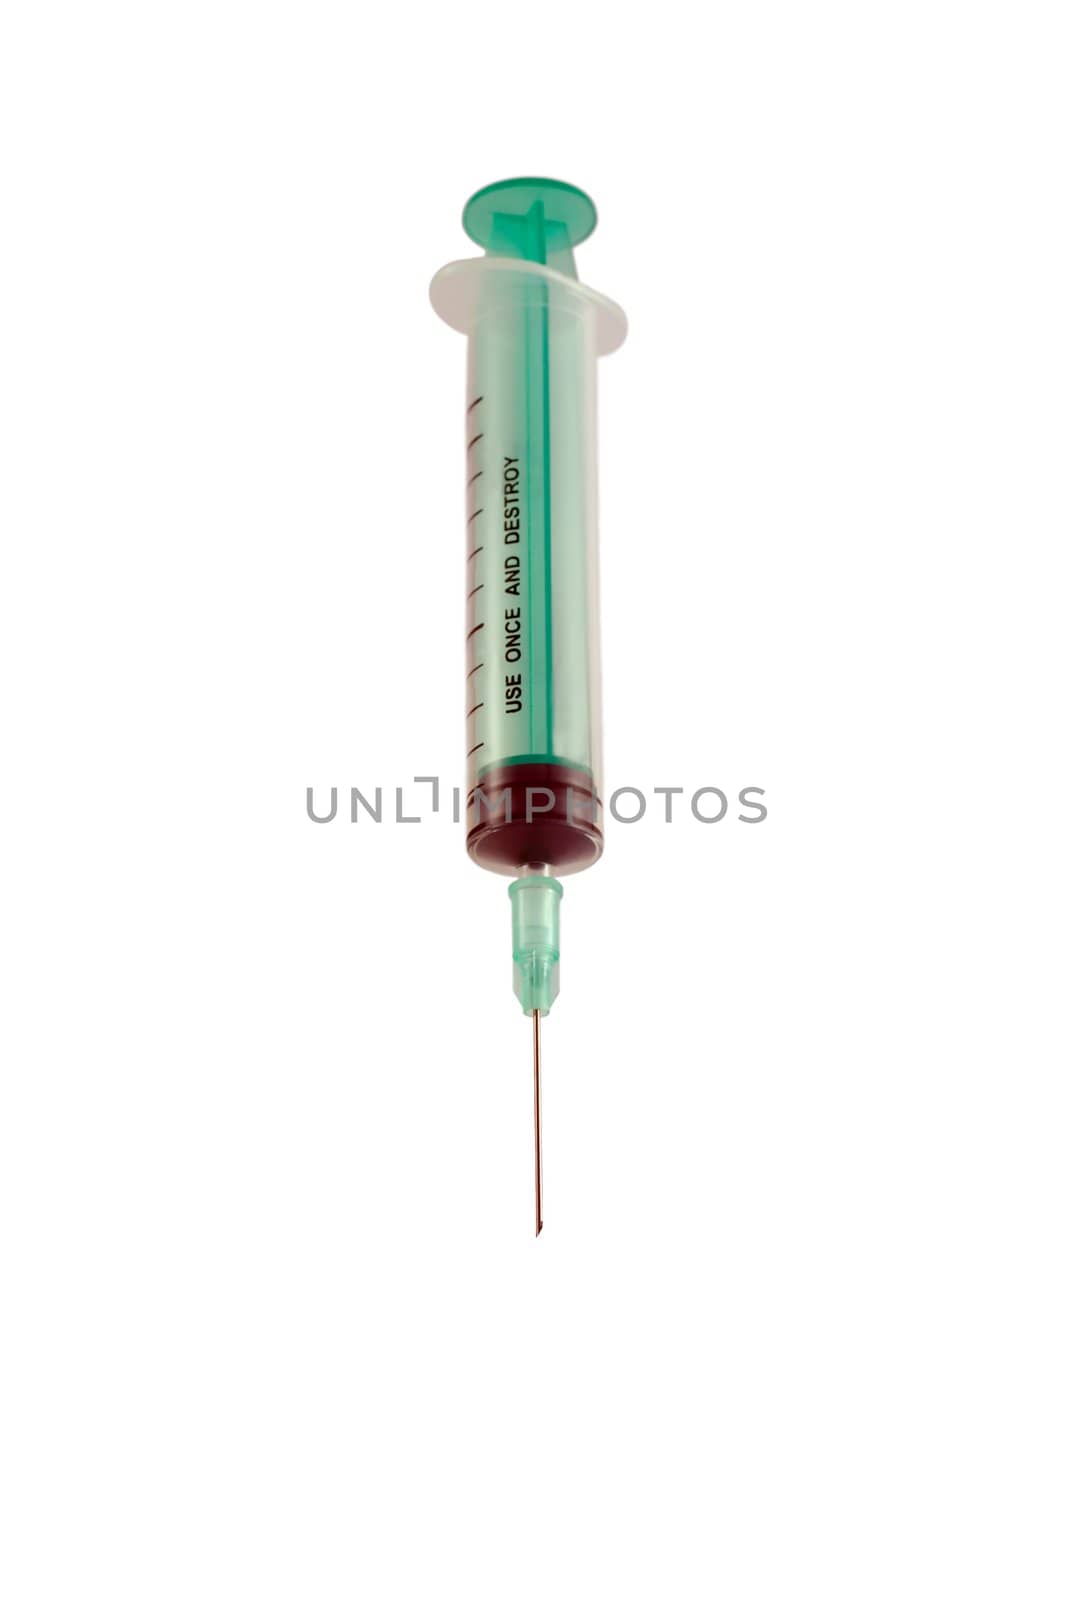 syringe,Isolated on white background.